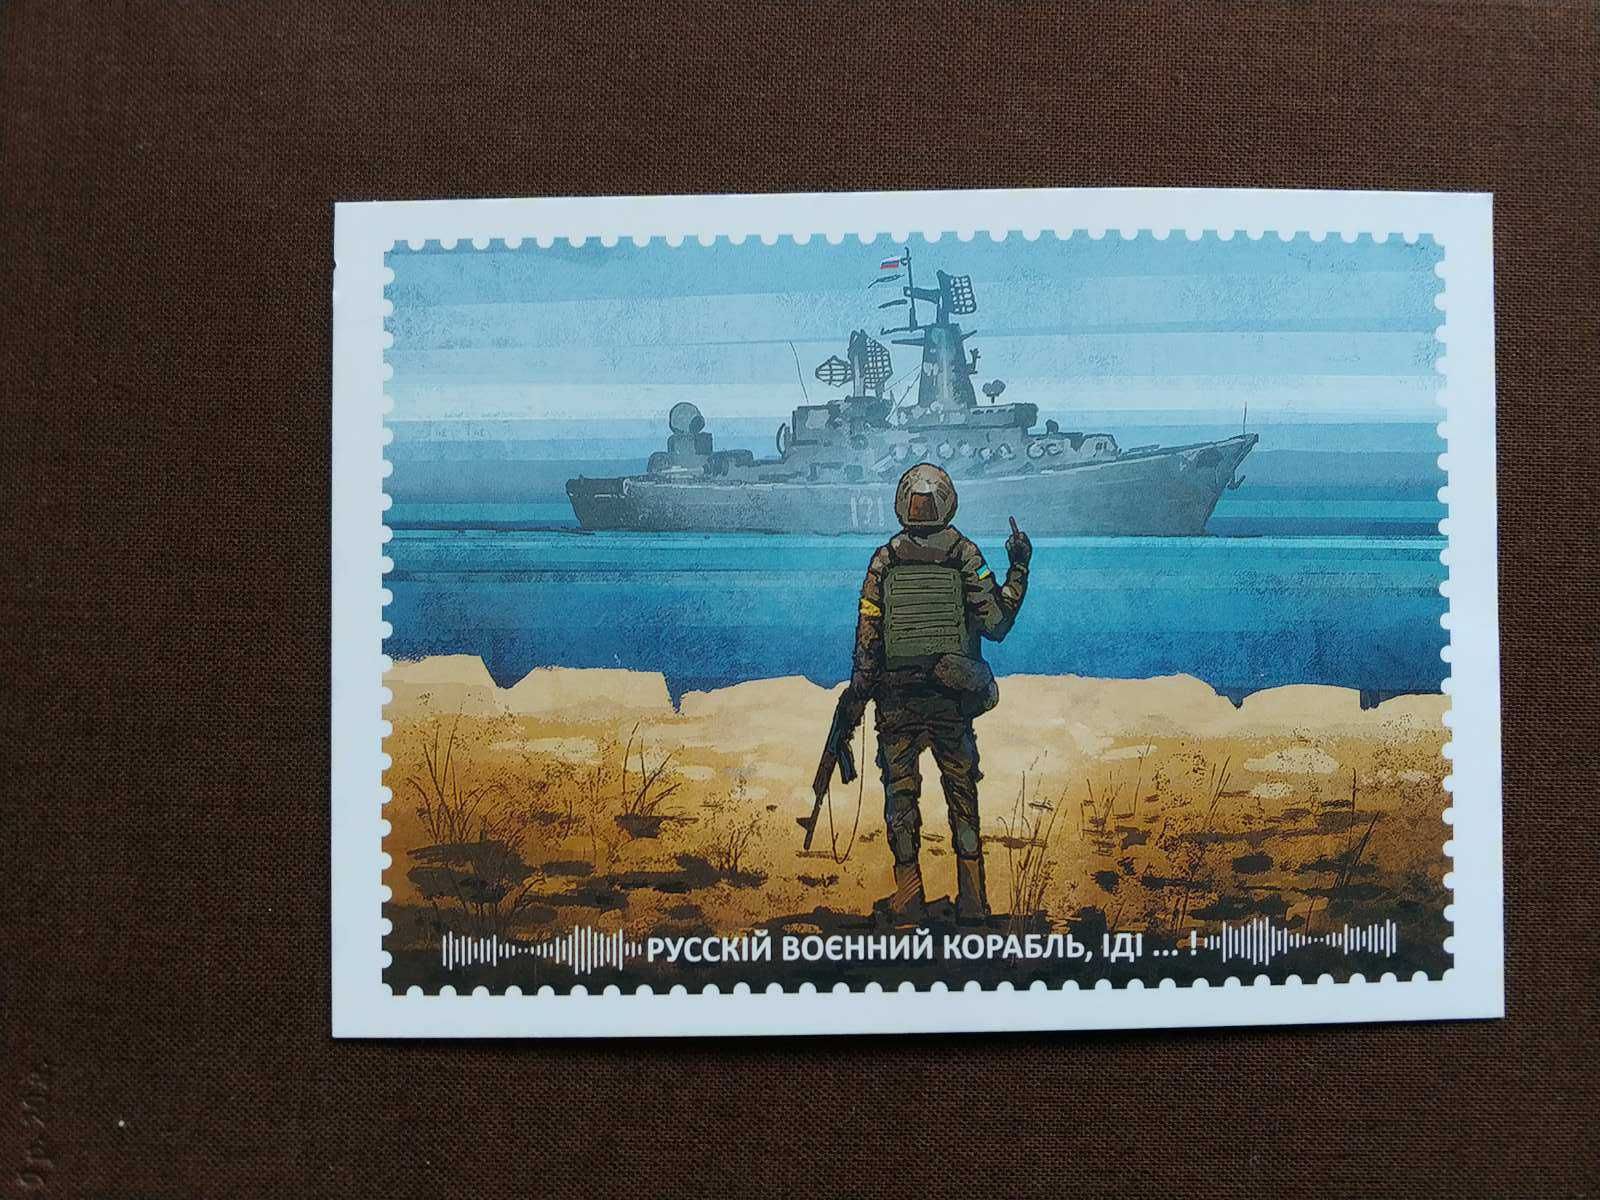 Ukraina znaczki W, koperta, kartka- ruski okręt wojenny - done!